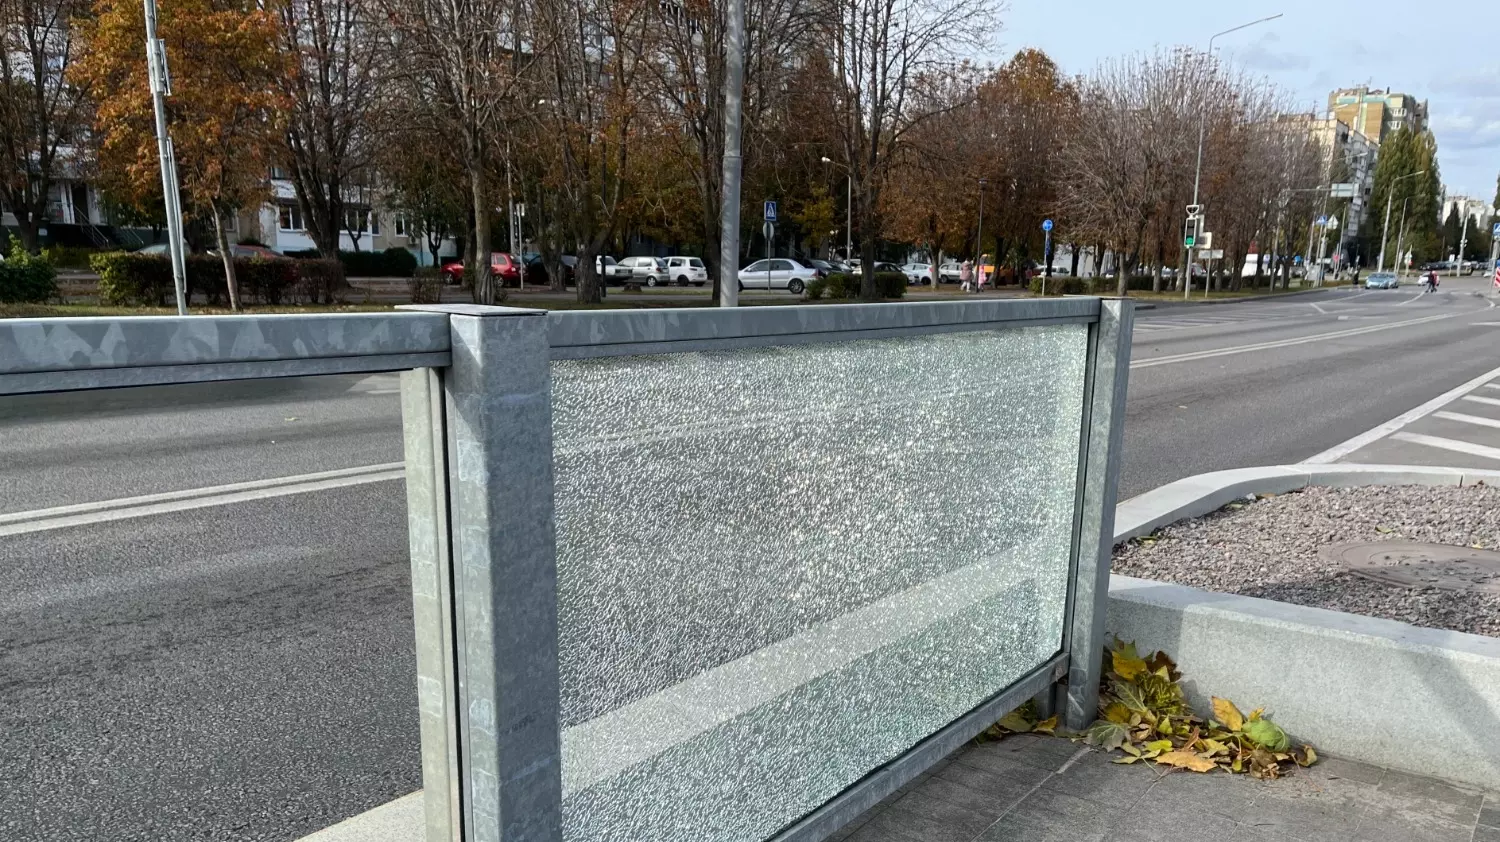 Разбитые стёкла на остановке в Белгороде